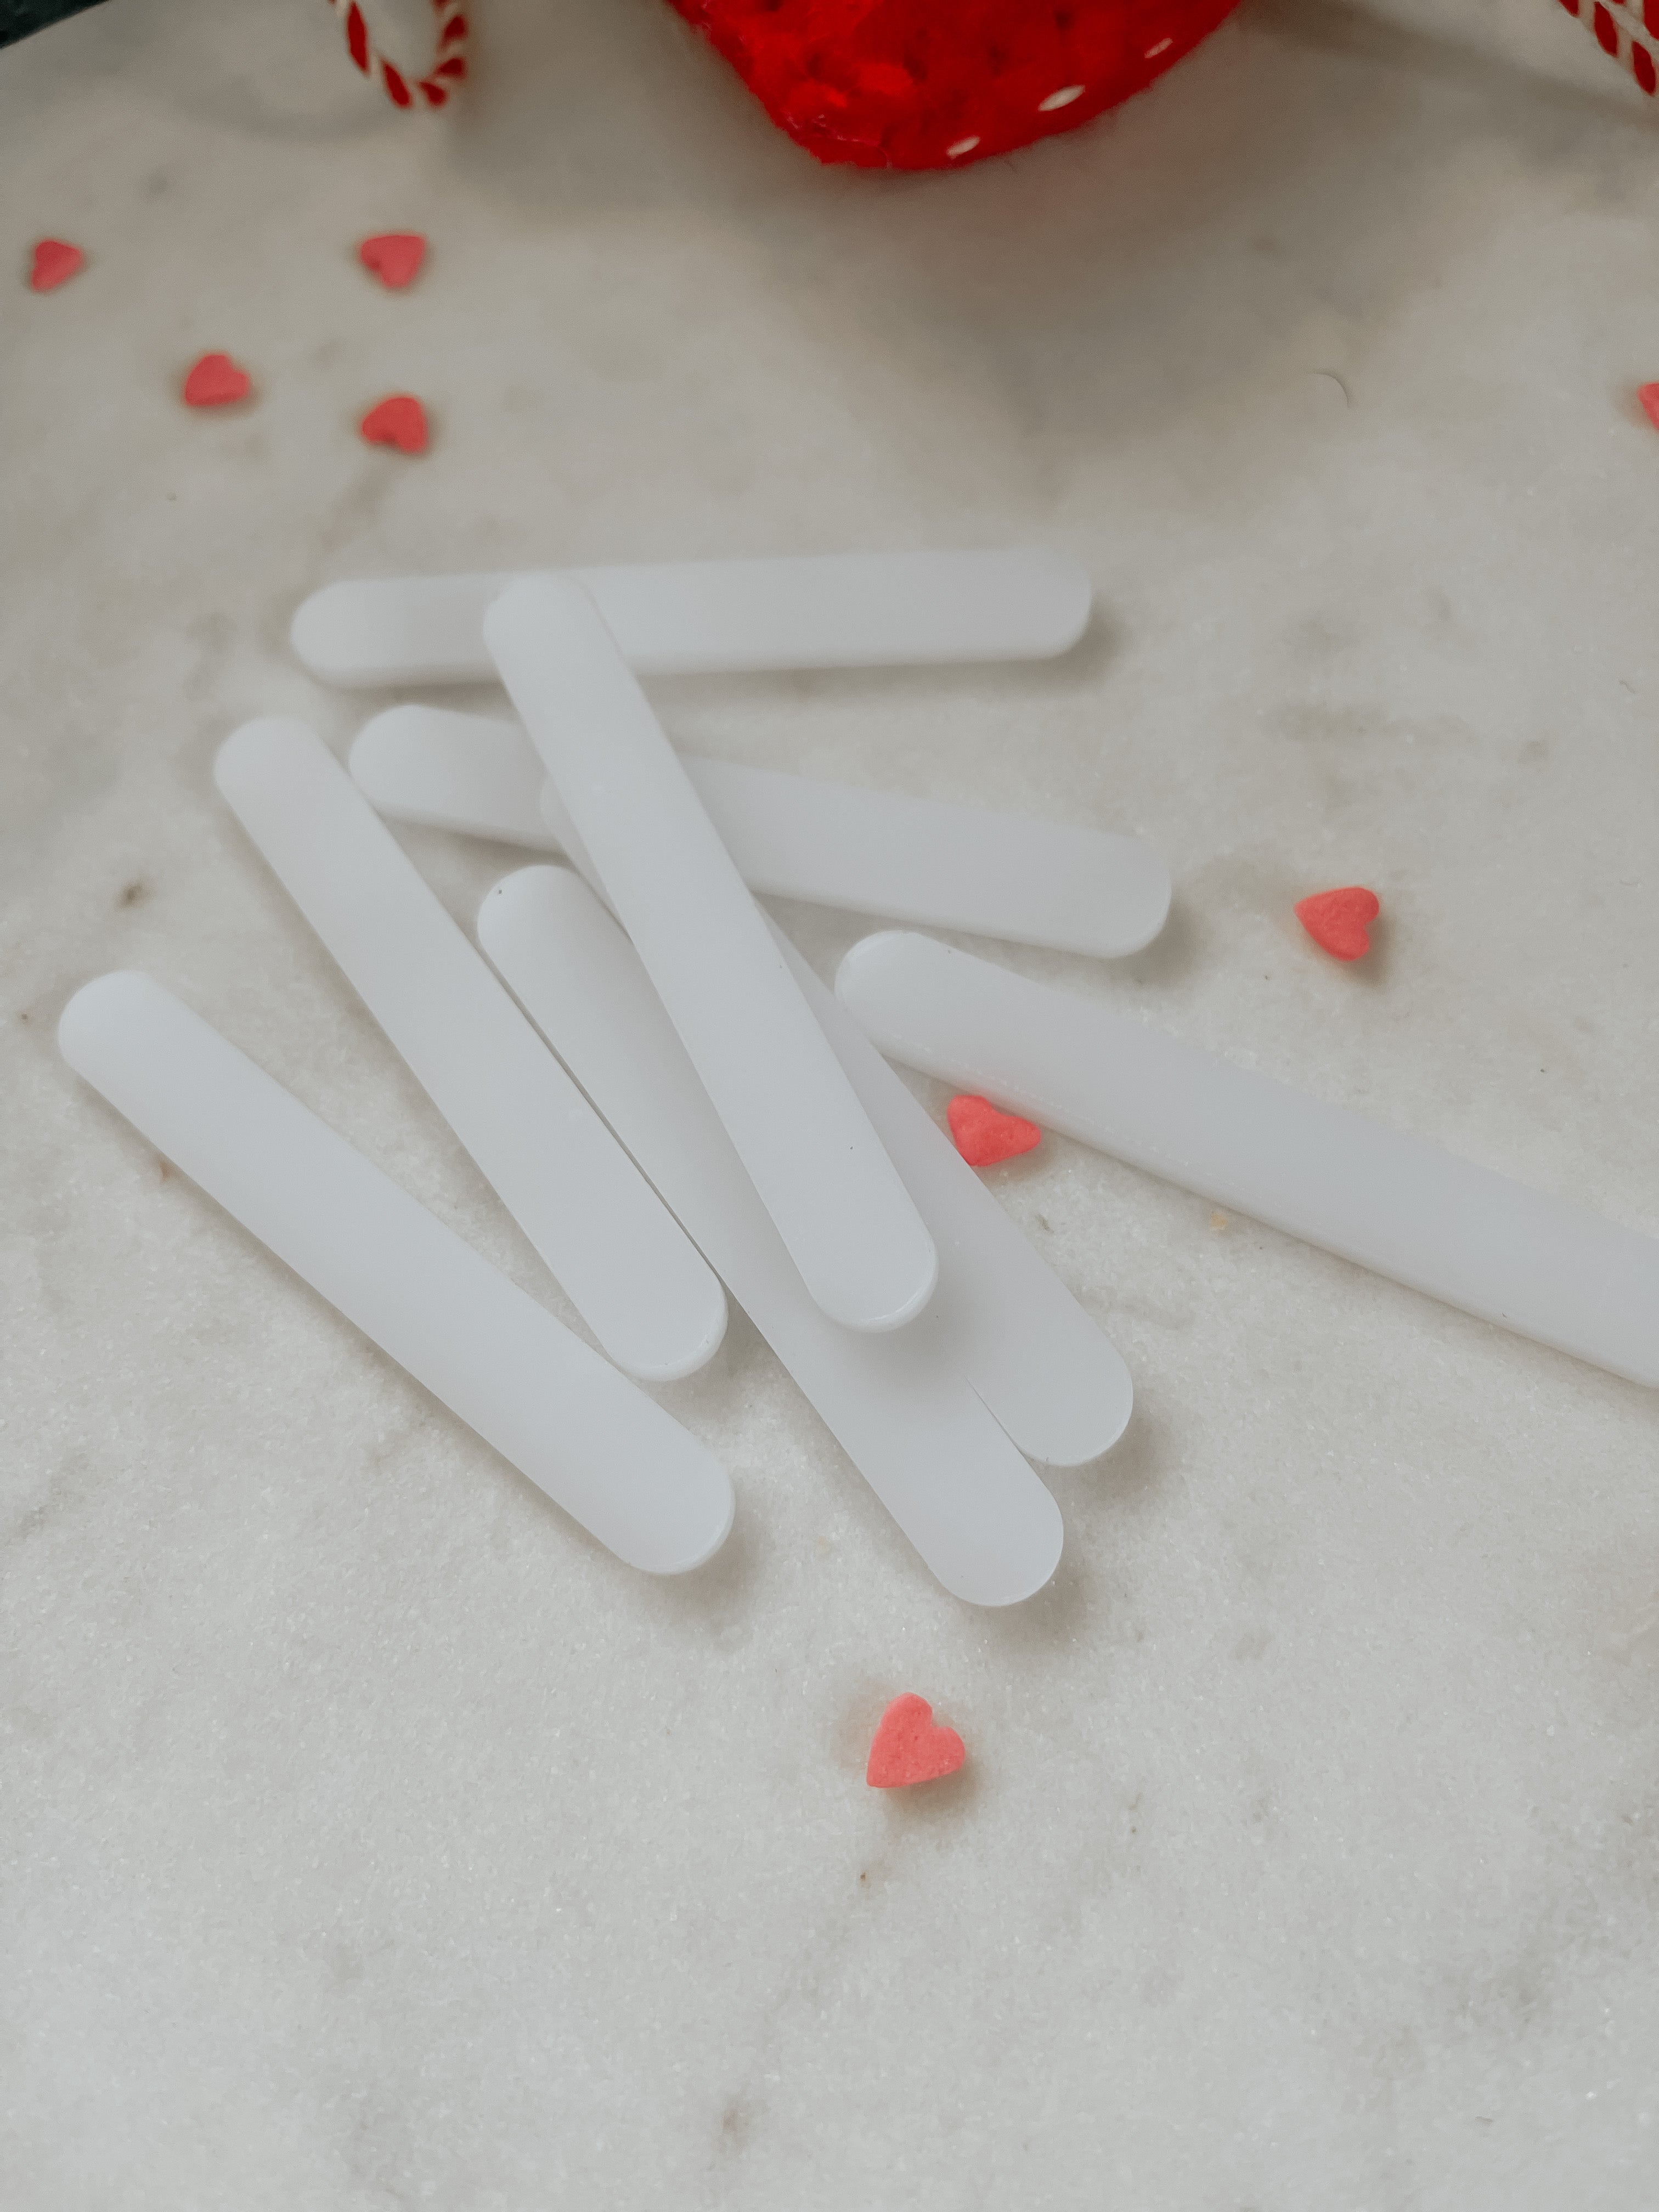 Mini Popsicle Sticks